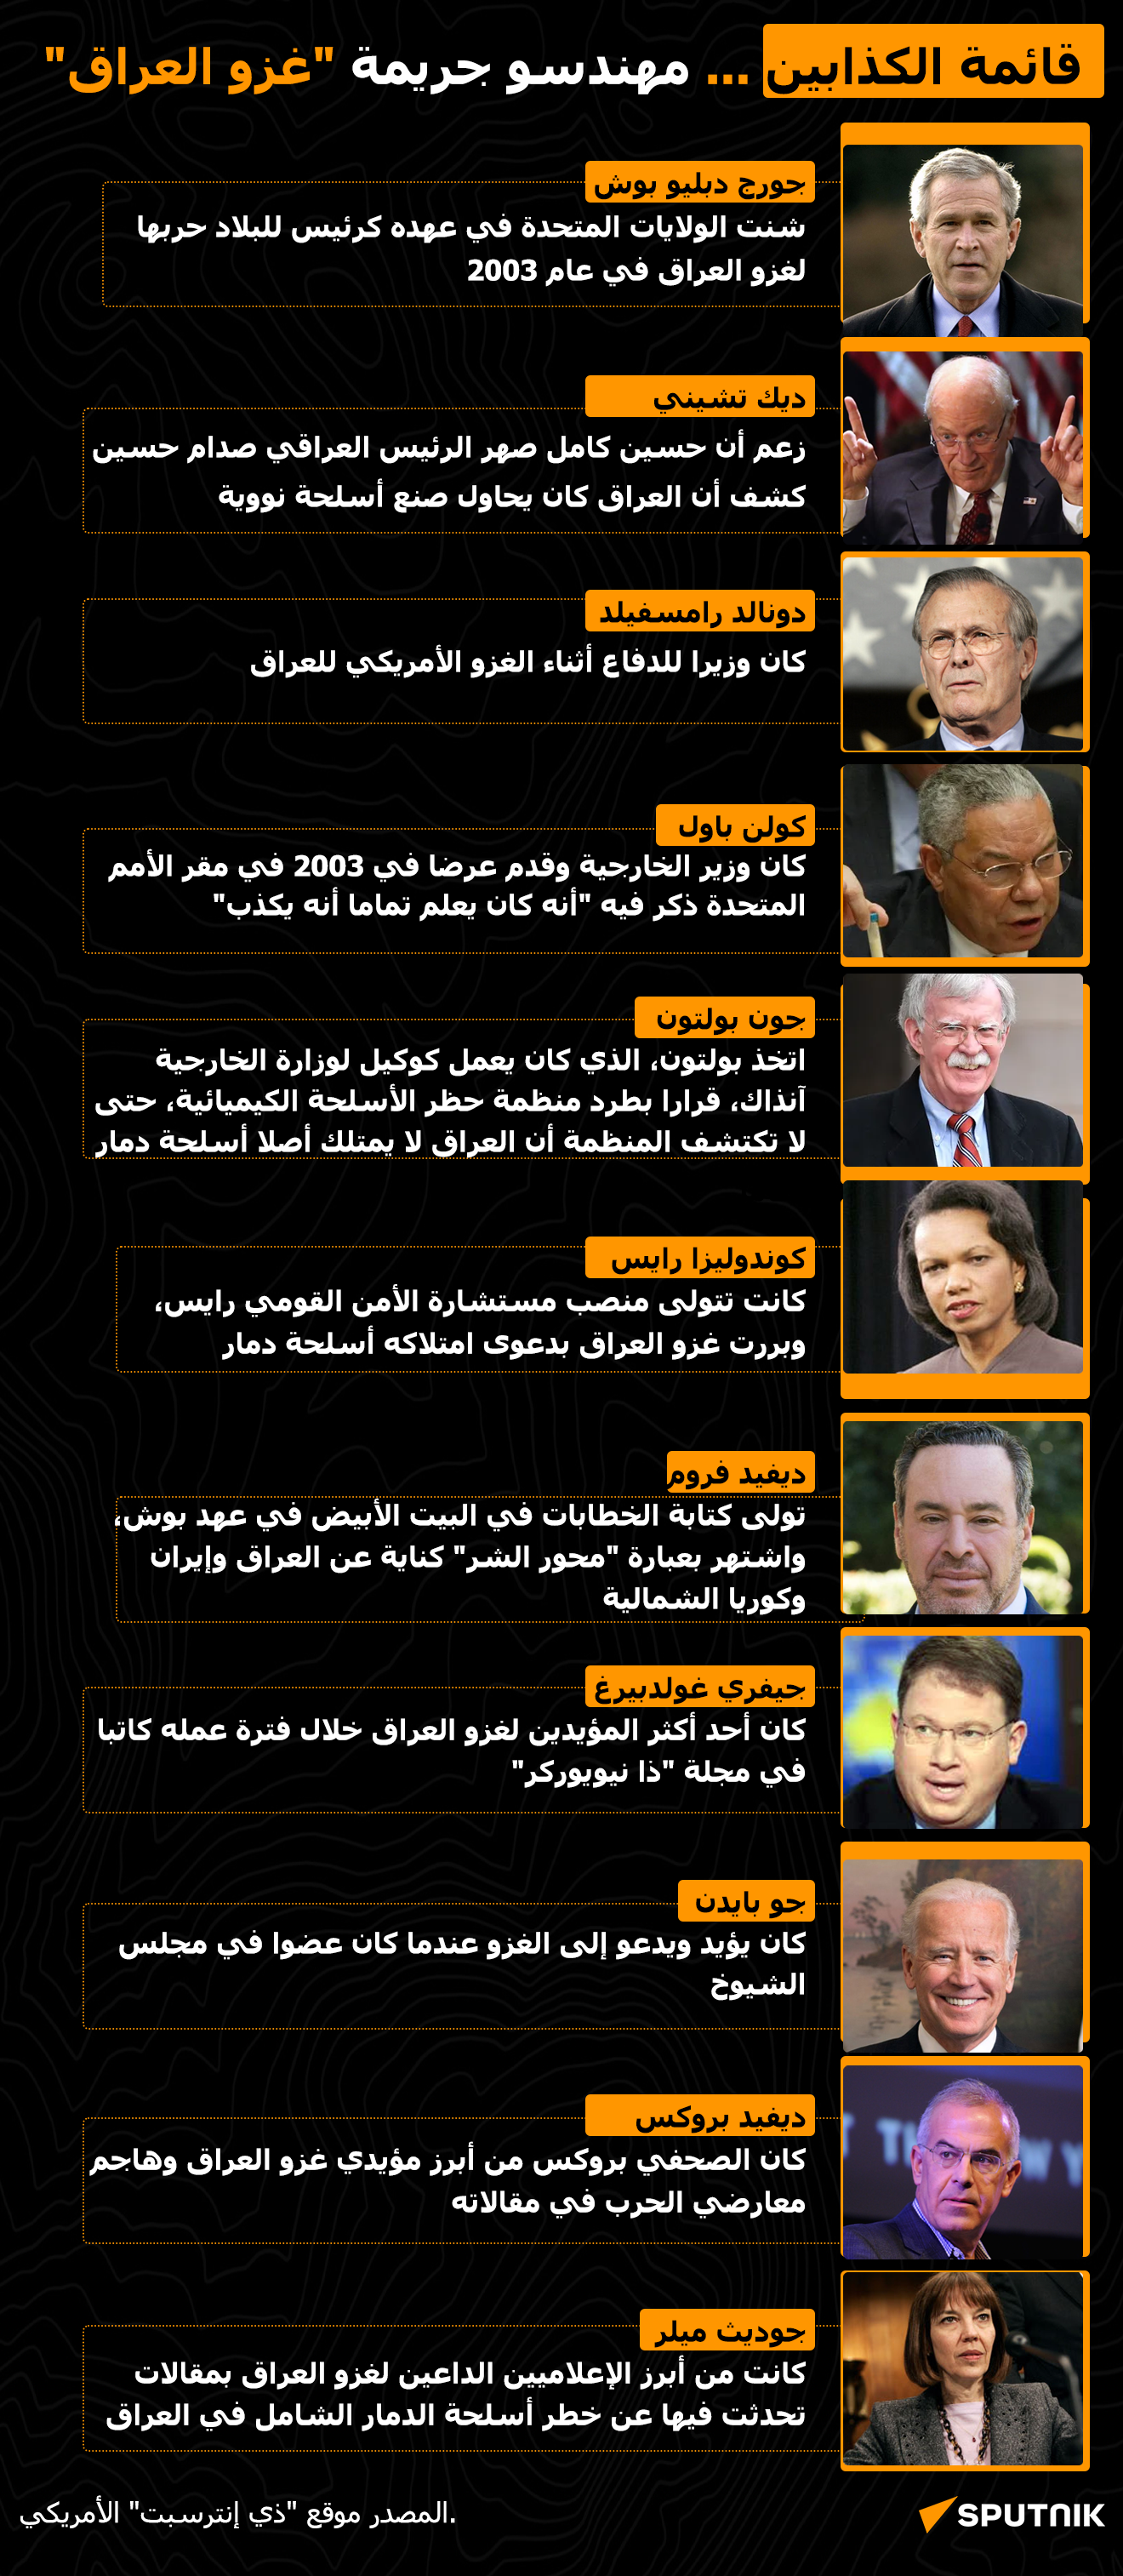 قائمة الكذابين... مهندسو جريمة غزو العراق - سبوتنيك عربي